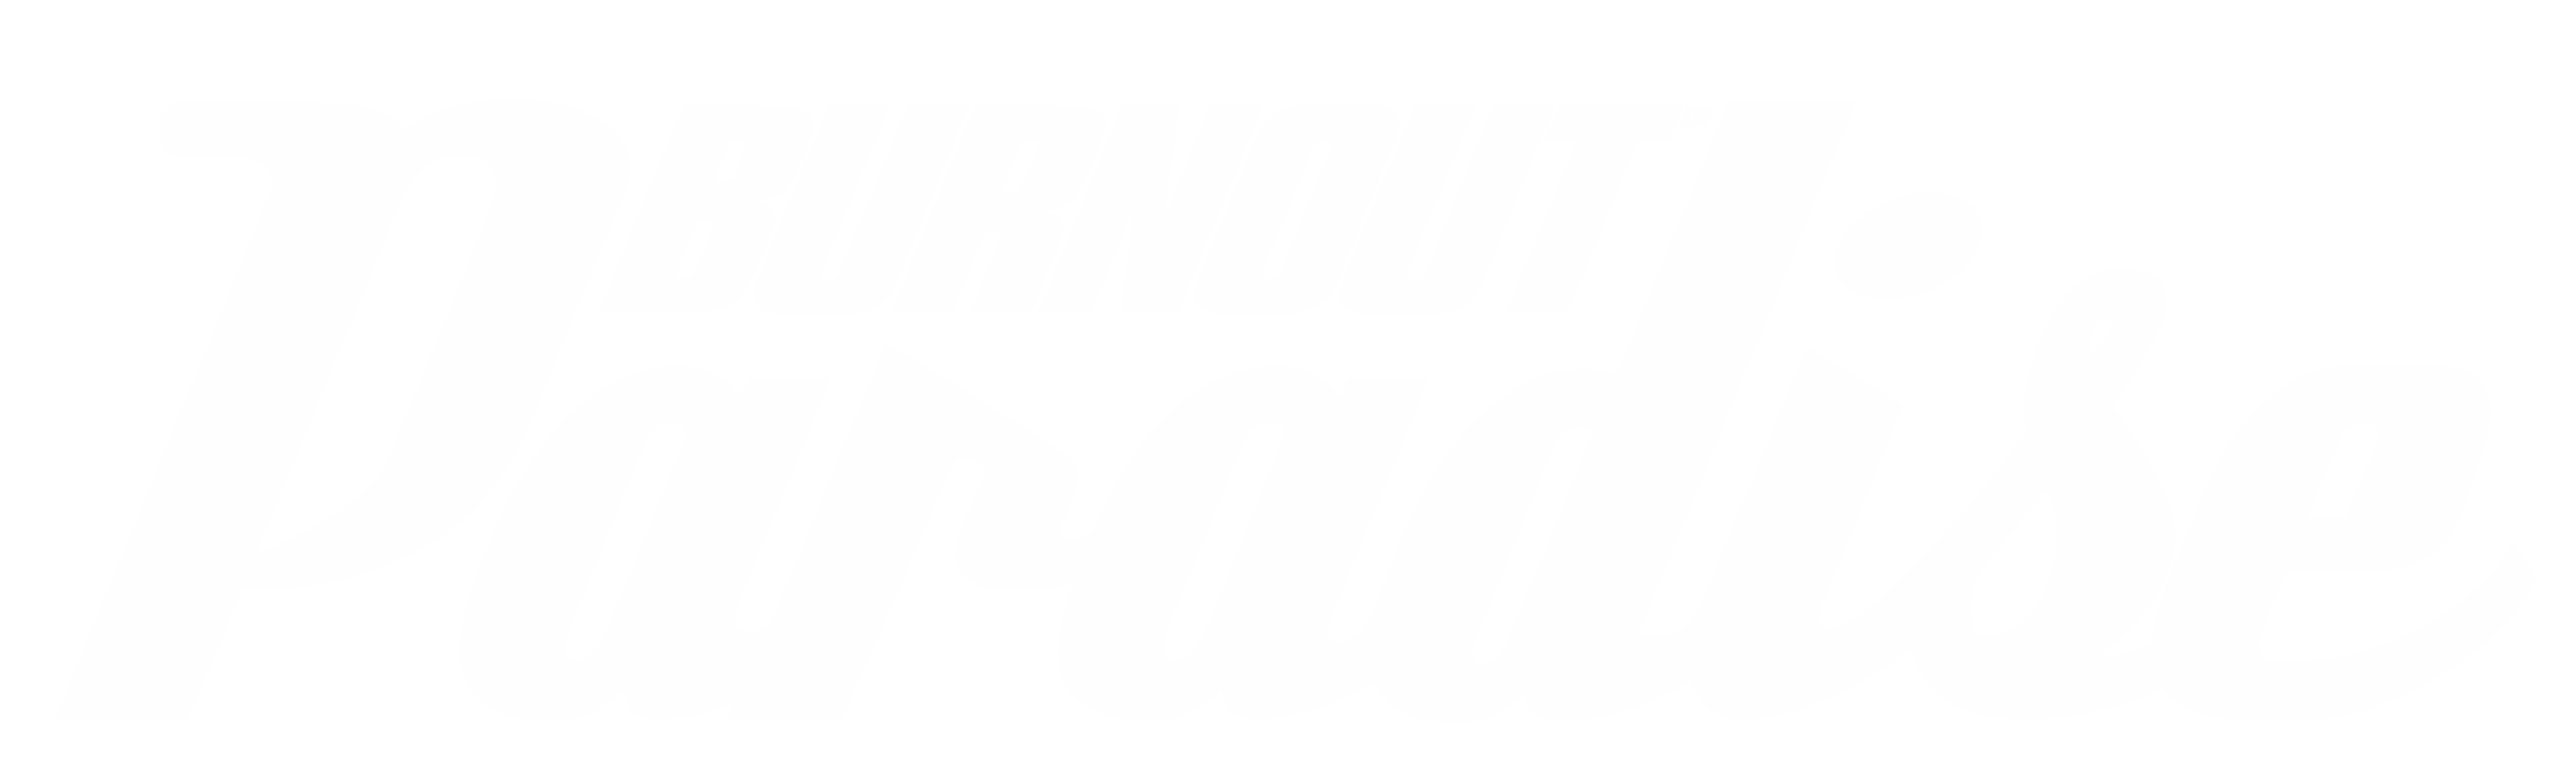 Burnout Video Games - Official EA Site